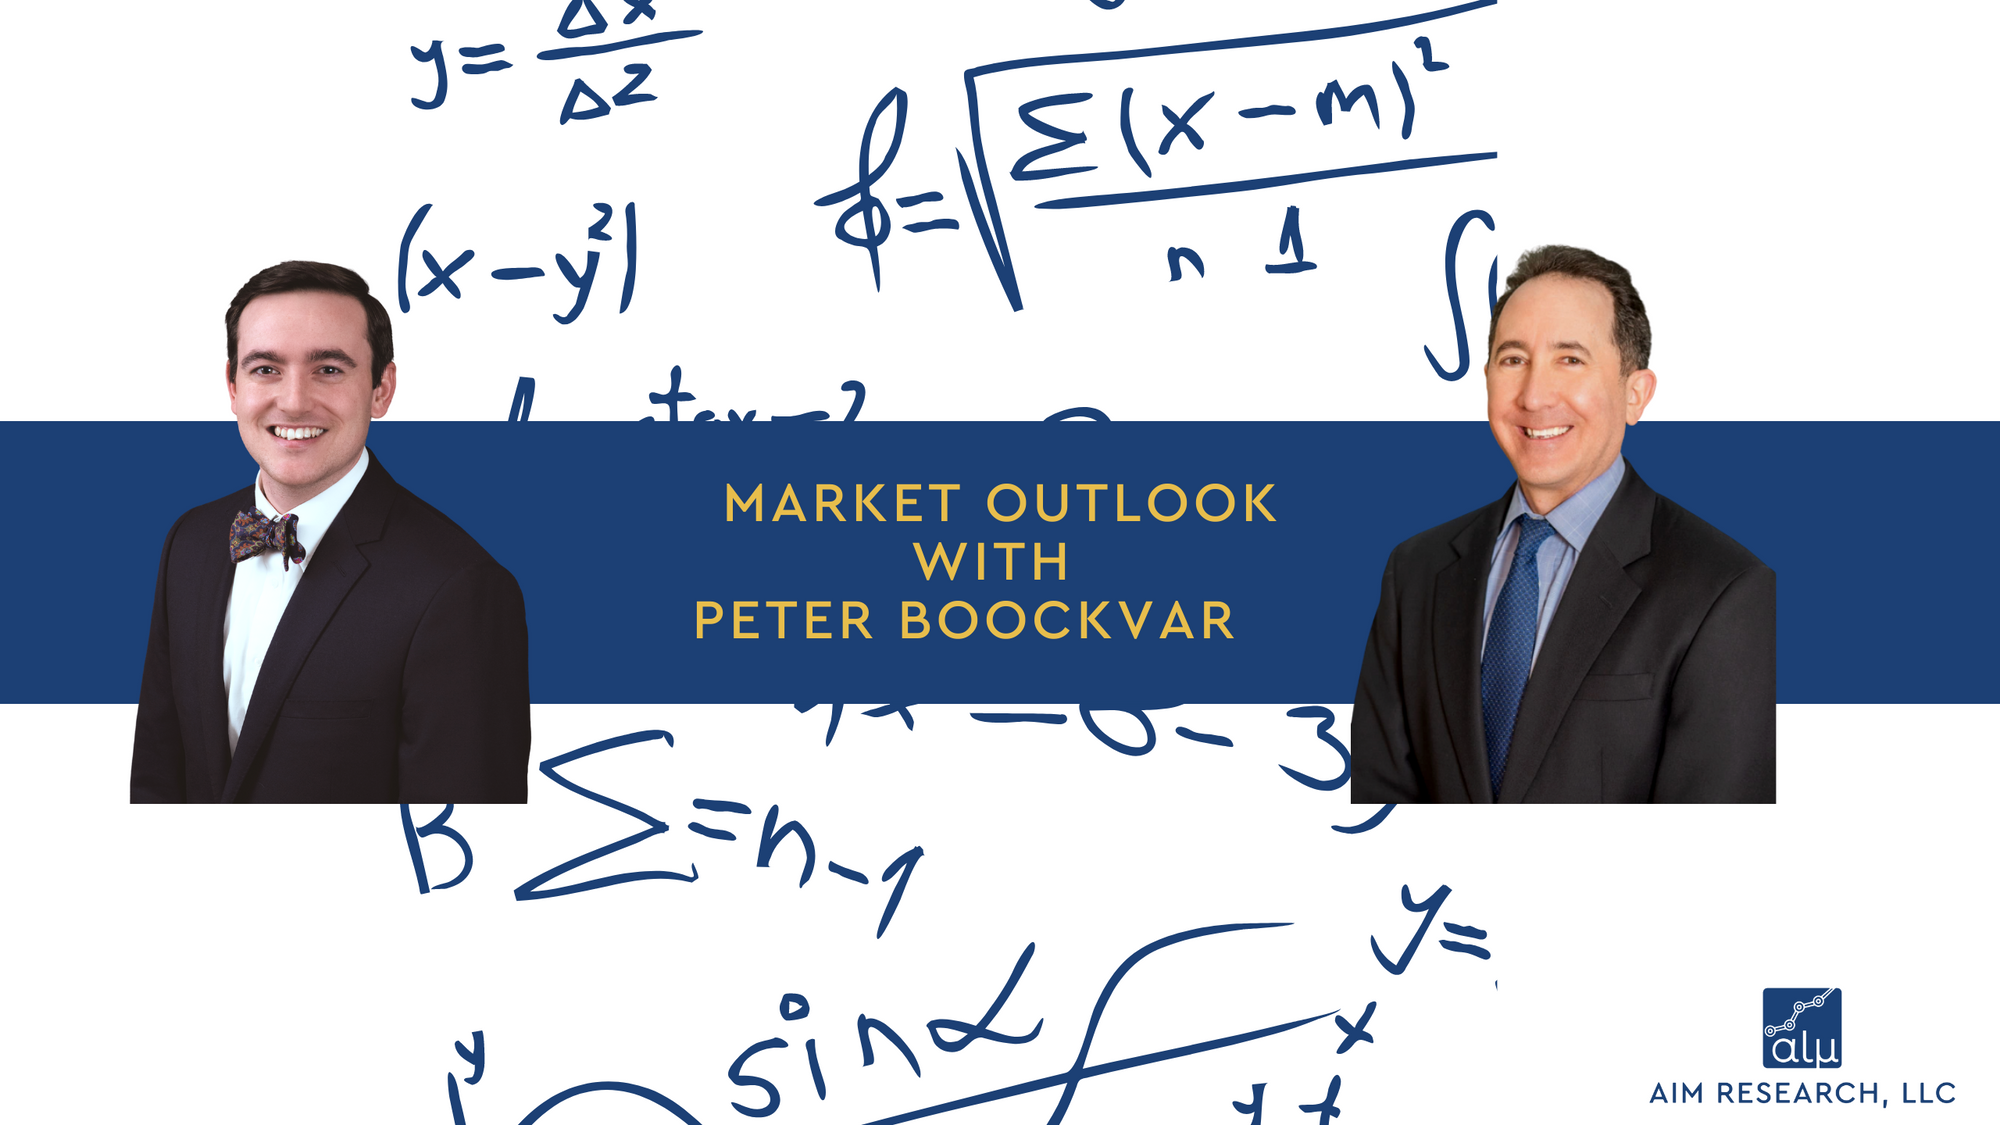 Market Outlook with Peter Boockvar